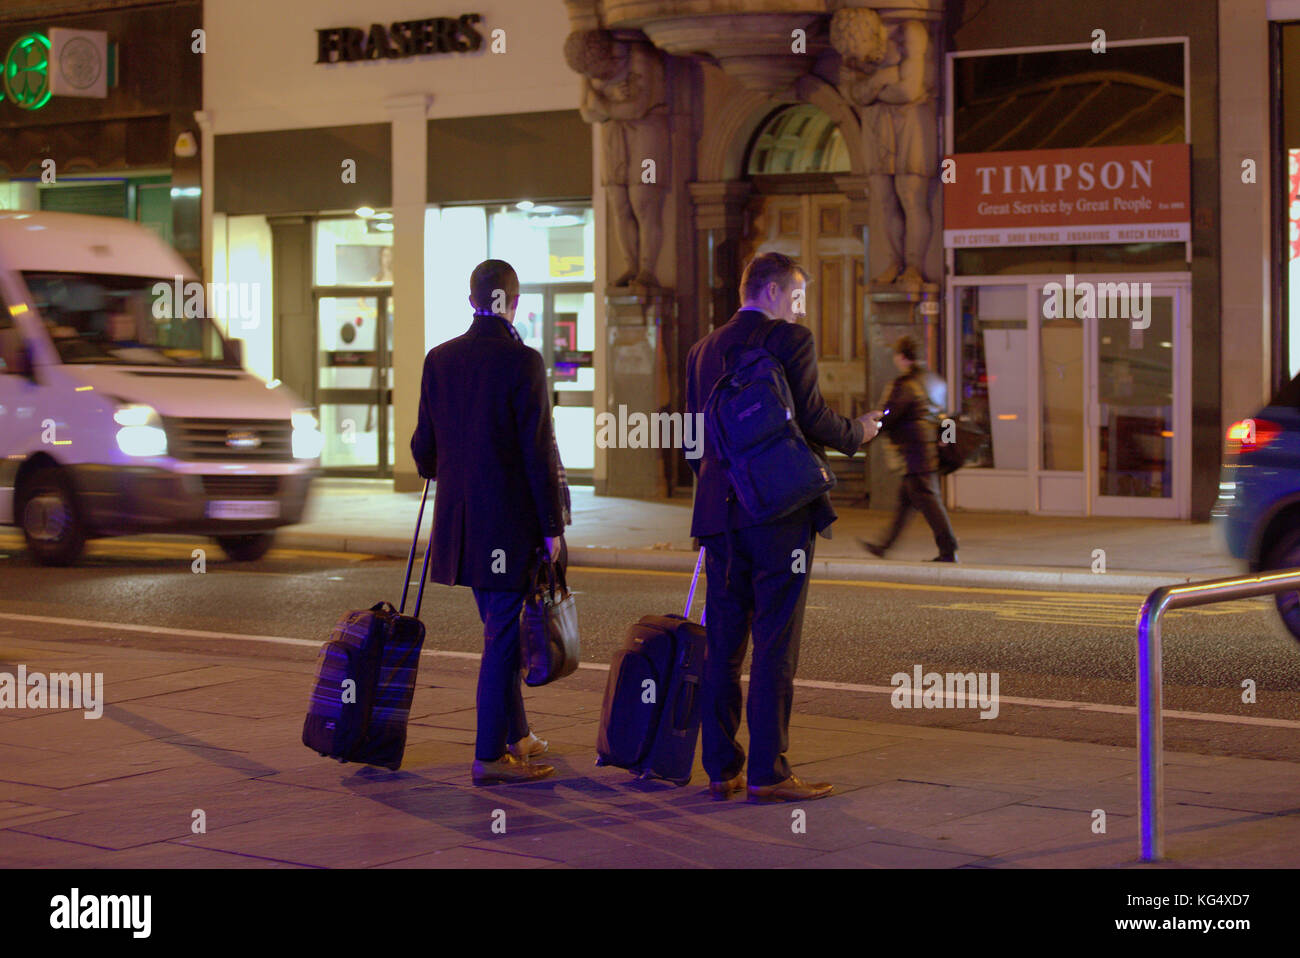 Touristen Geschäftsmann auf der belebten Straße mit Trolleys Taschen warten auf Taxi uber Fahrt auf dem Smartphone mobile gesehen von hinten Stockfoto